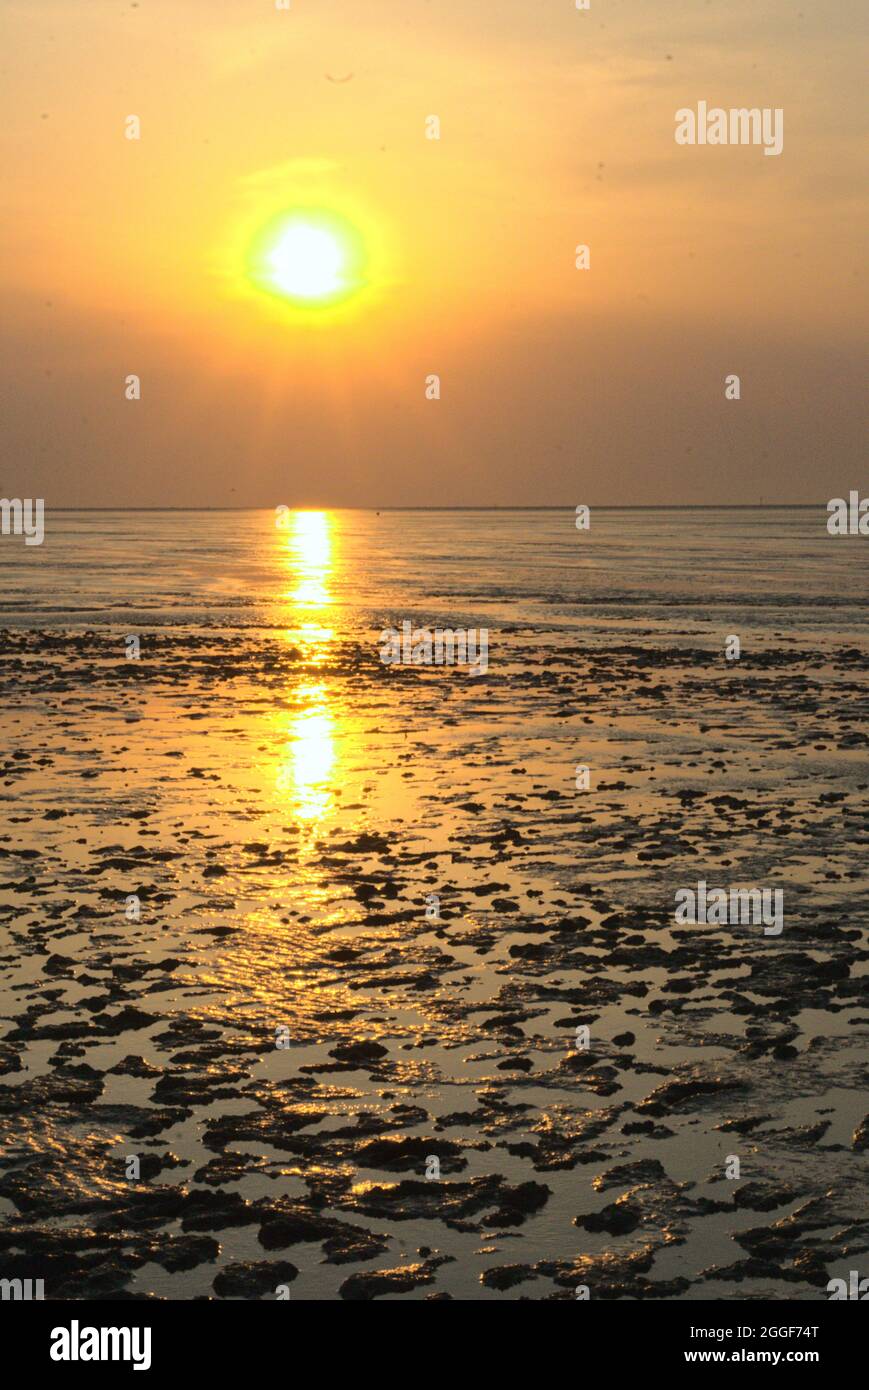 Coucher de soleil sur la mer des Wadden (Wattenmeer) Parc national classé au patrimoine mondial de l'UNESCO à Cuxhaven, Allemagne Banque D'Images